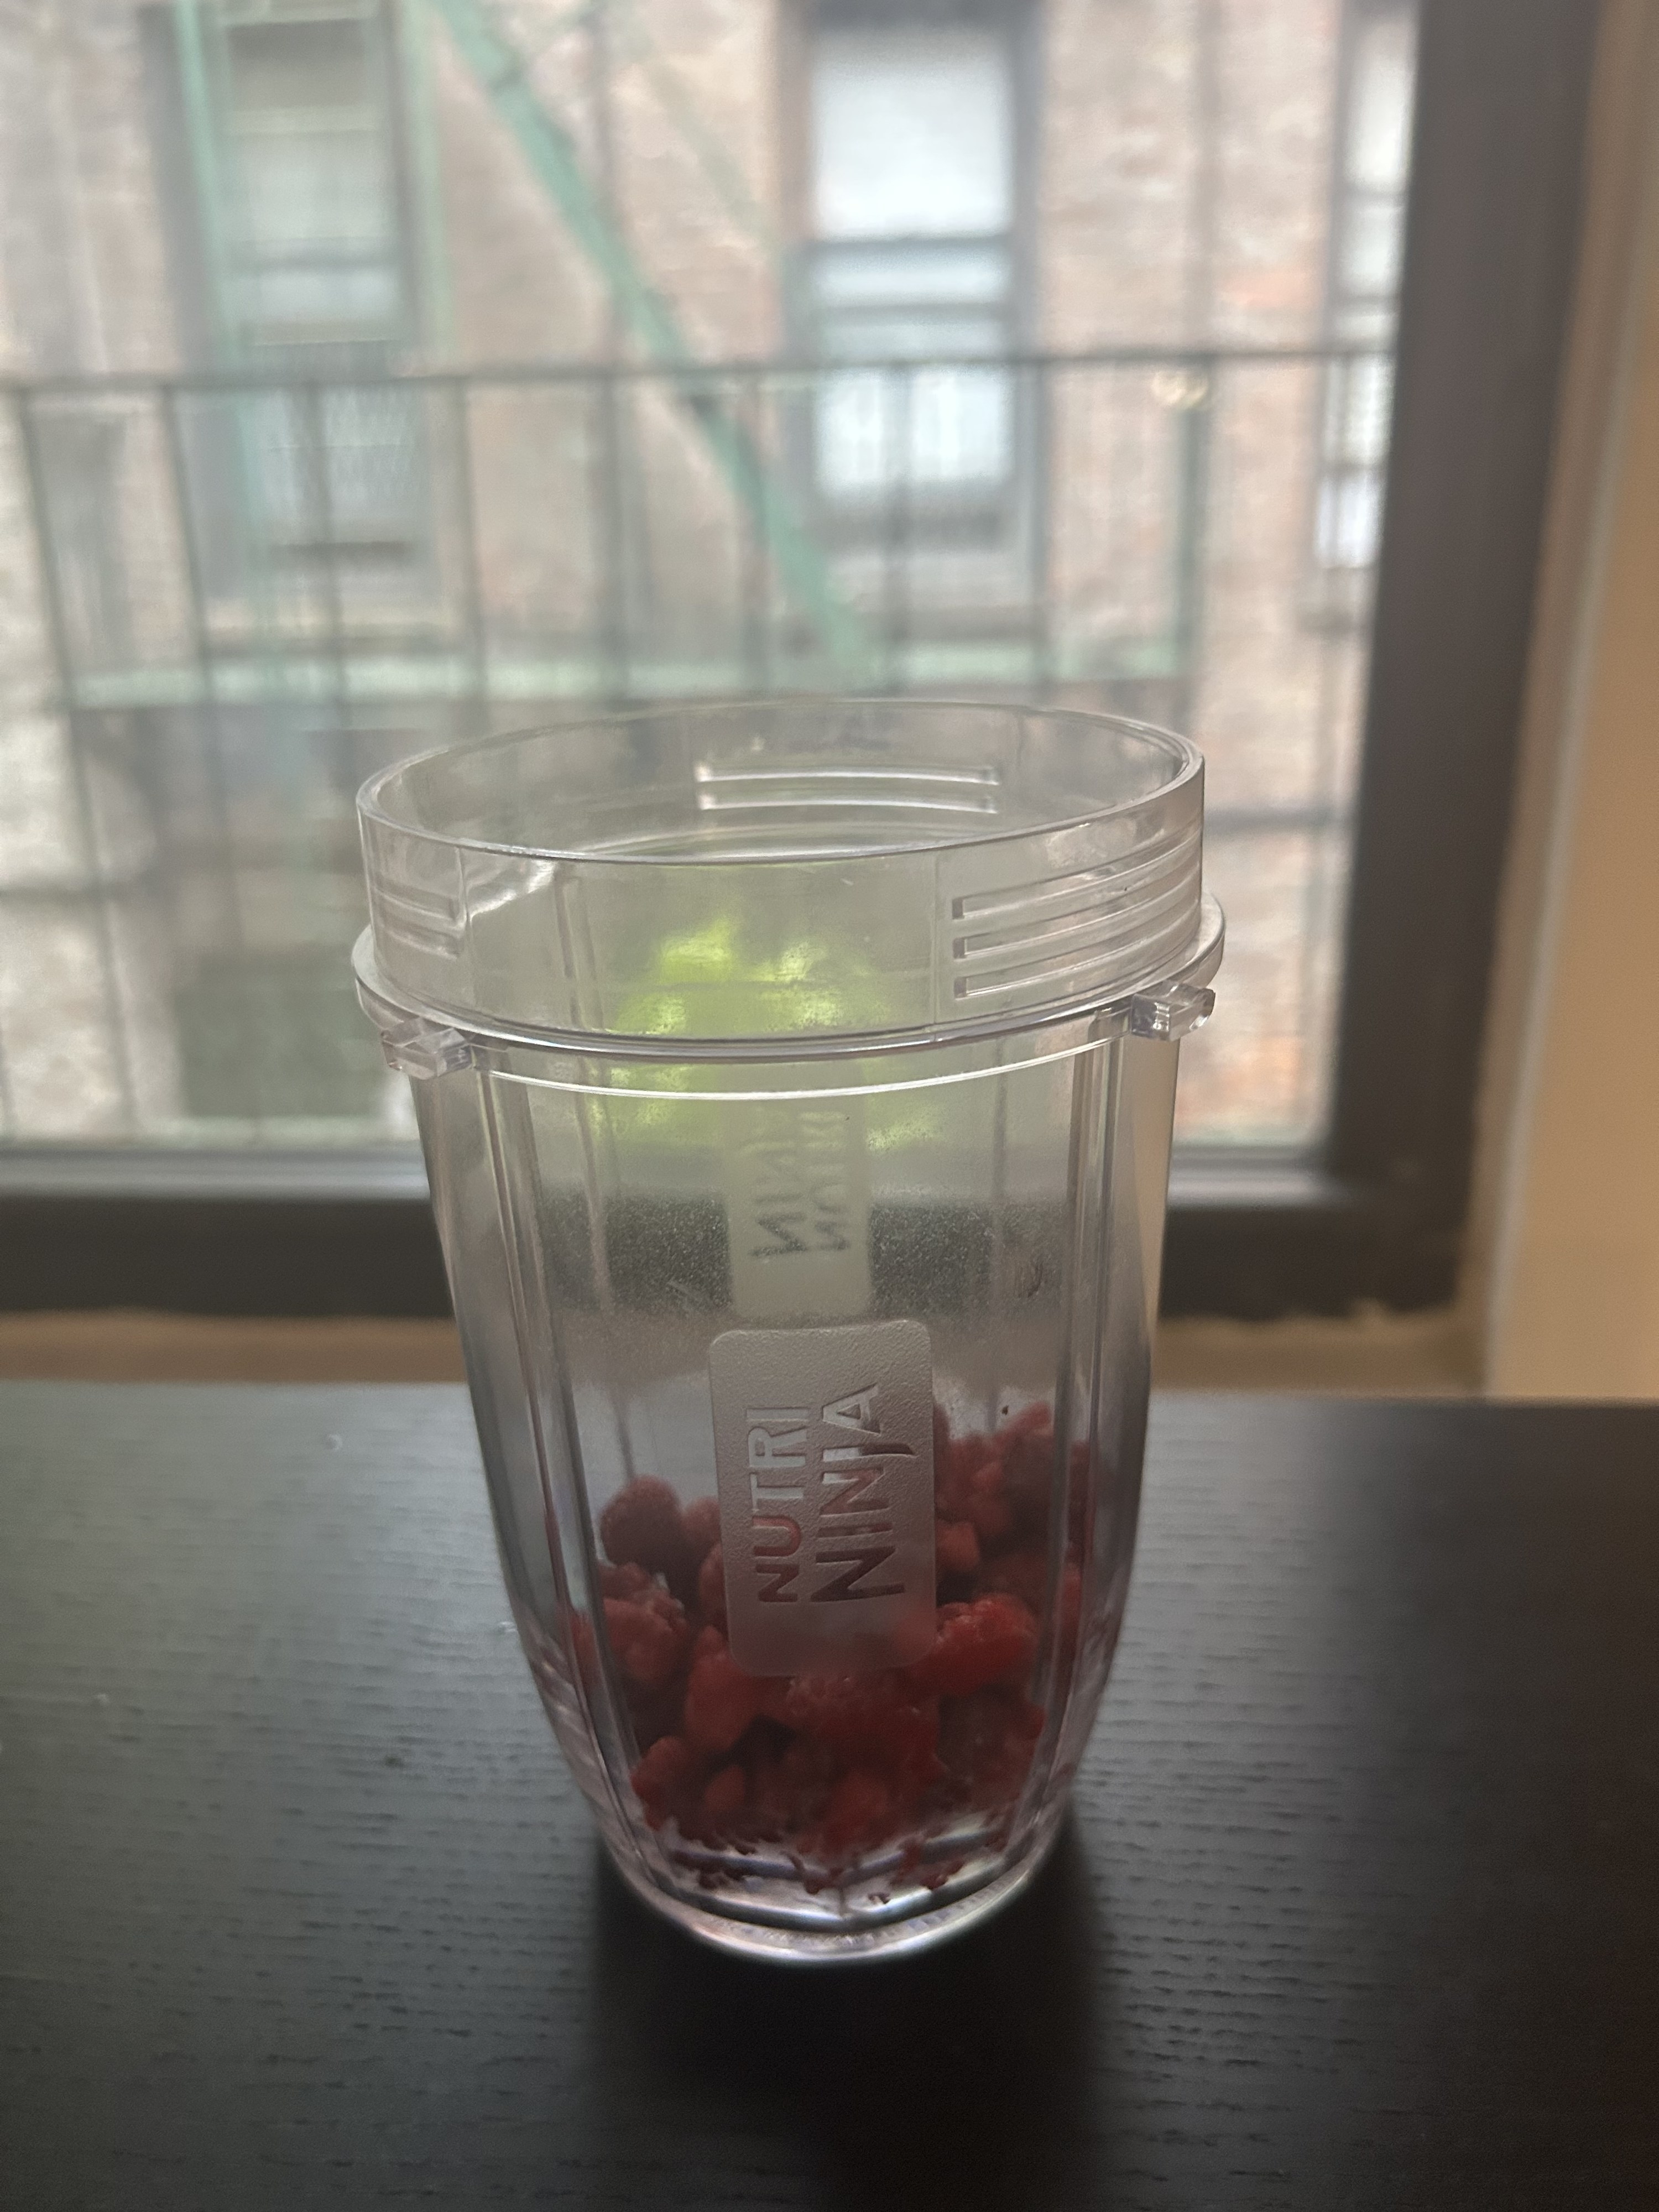 Raspberries sit in a blender